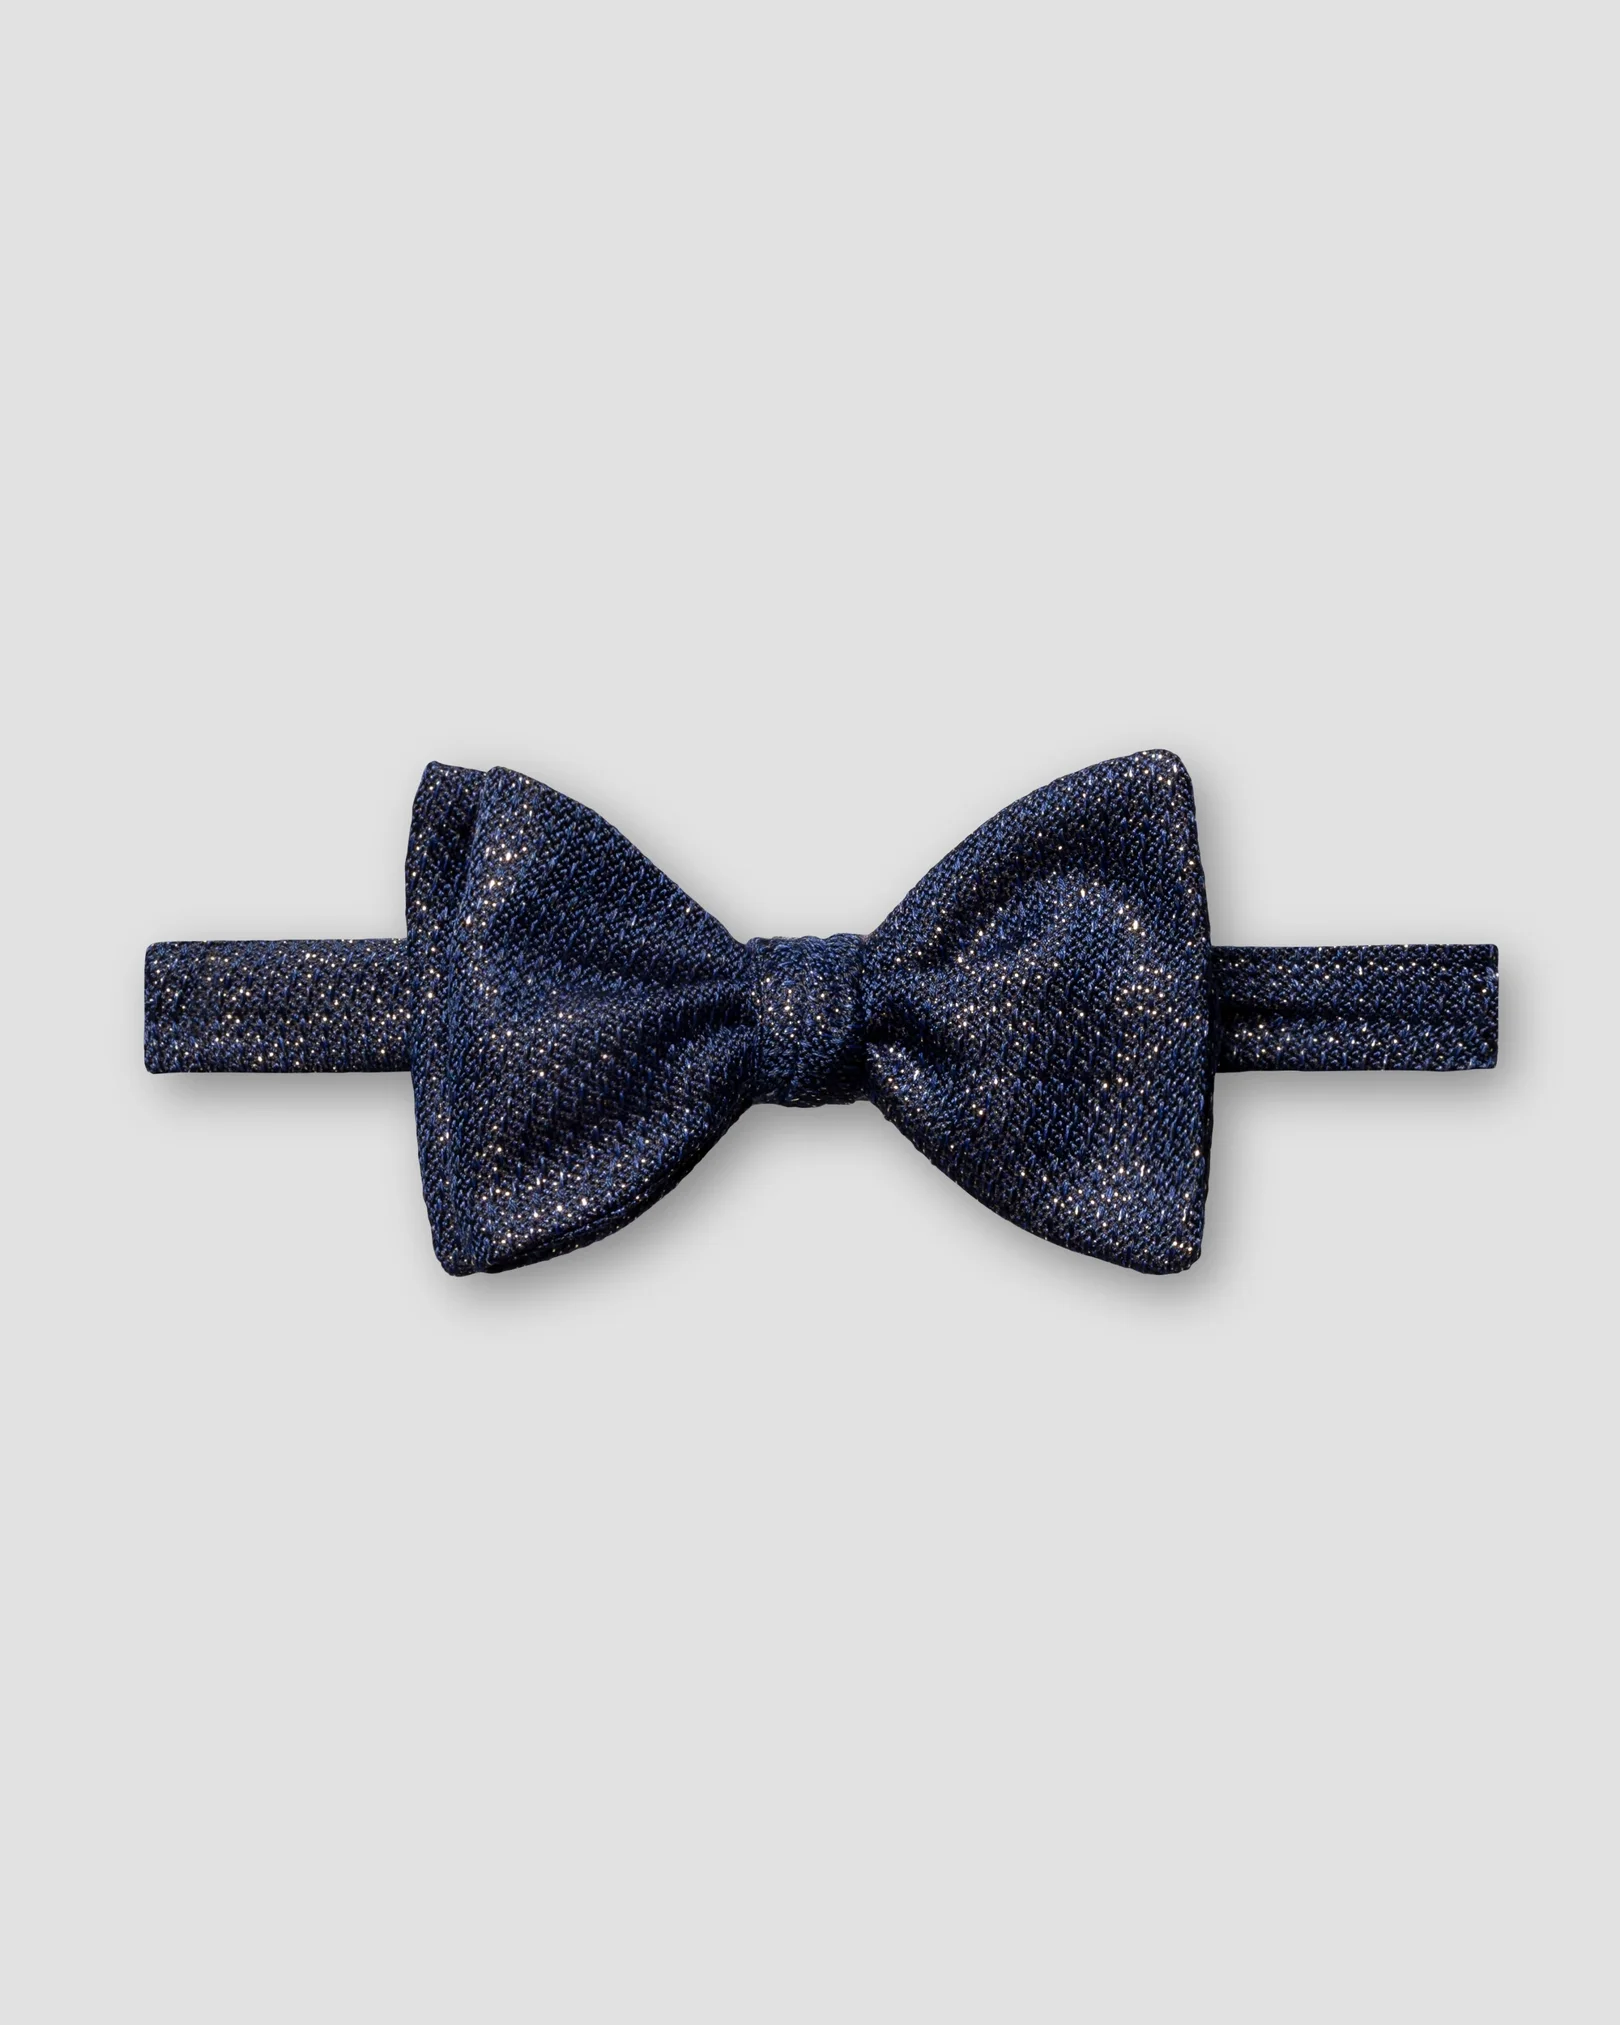 Eton - dark blue shimmer silk blend bow tie ready tied